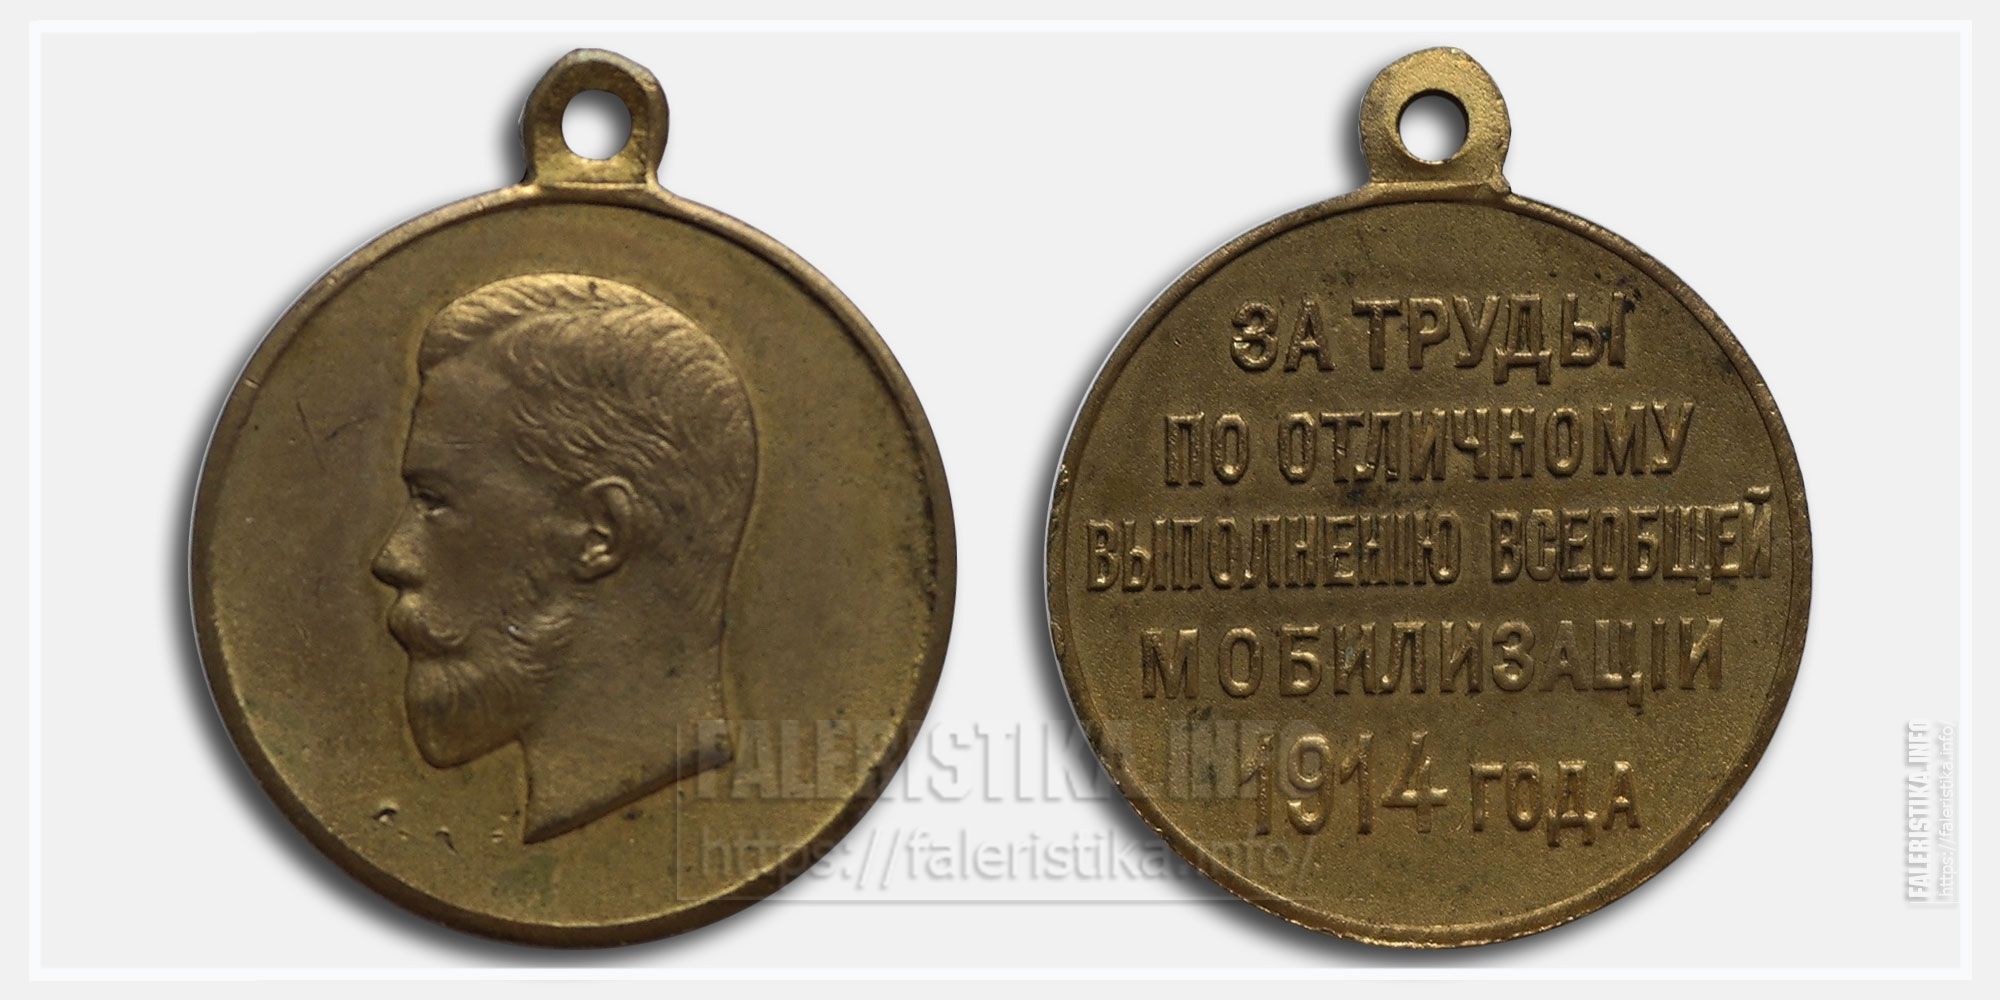 Медаль "За труды по отличному выполнению всеобщей мобилизации 1914"